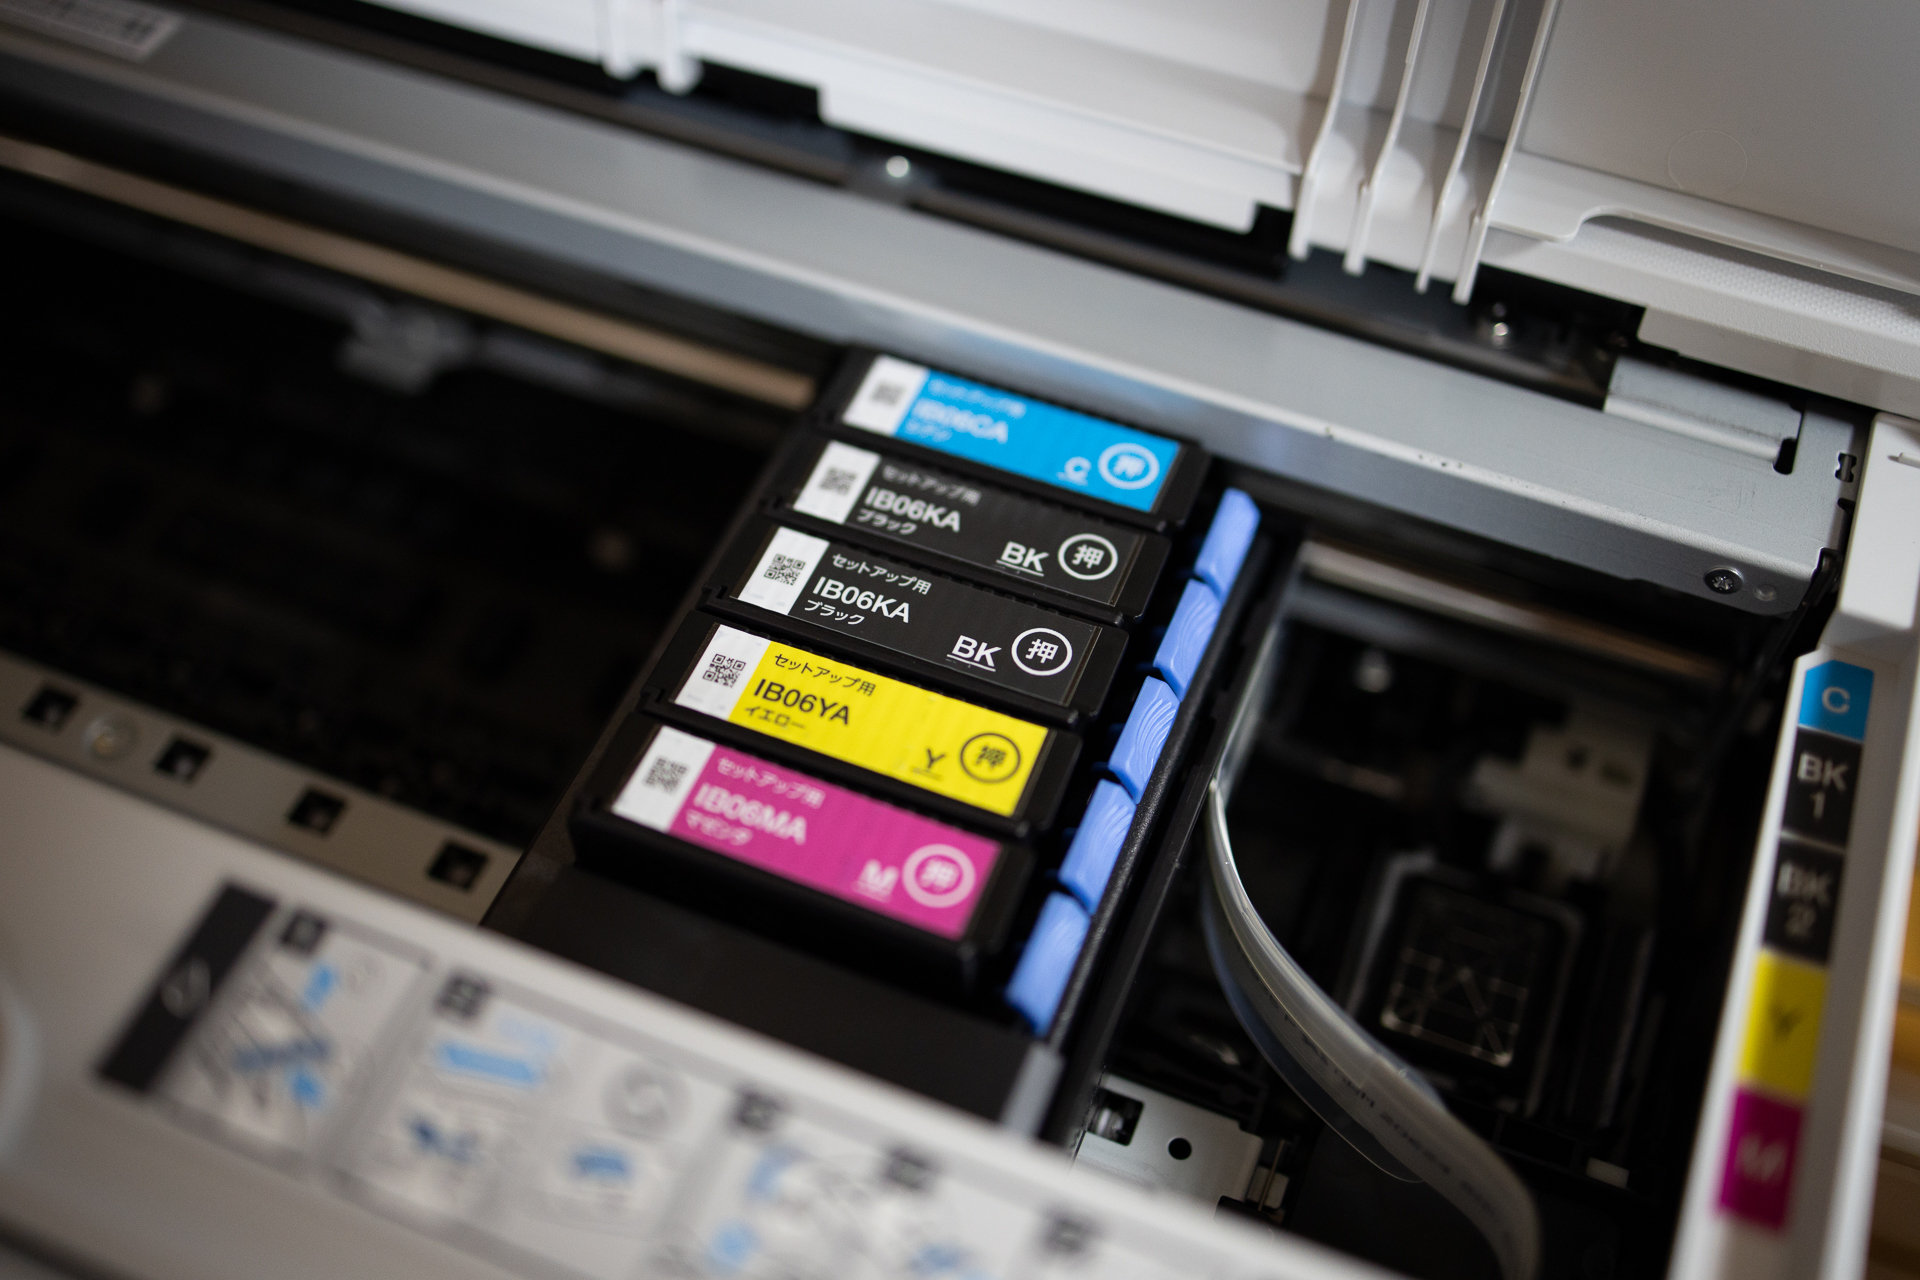 買換応援 エプソンA3プリンター 用紙・予備インクセット PX-S5010 PC周辺機器